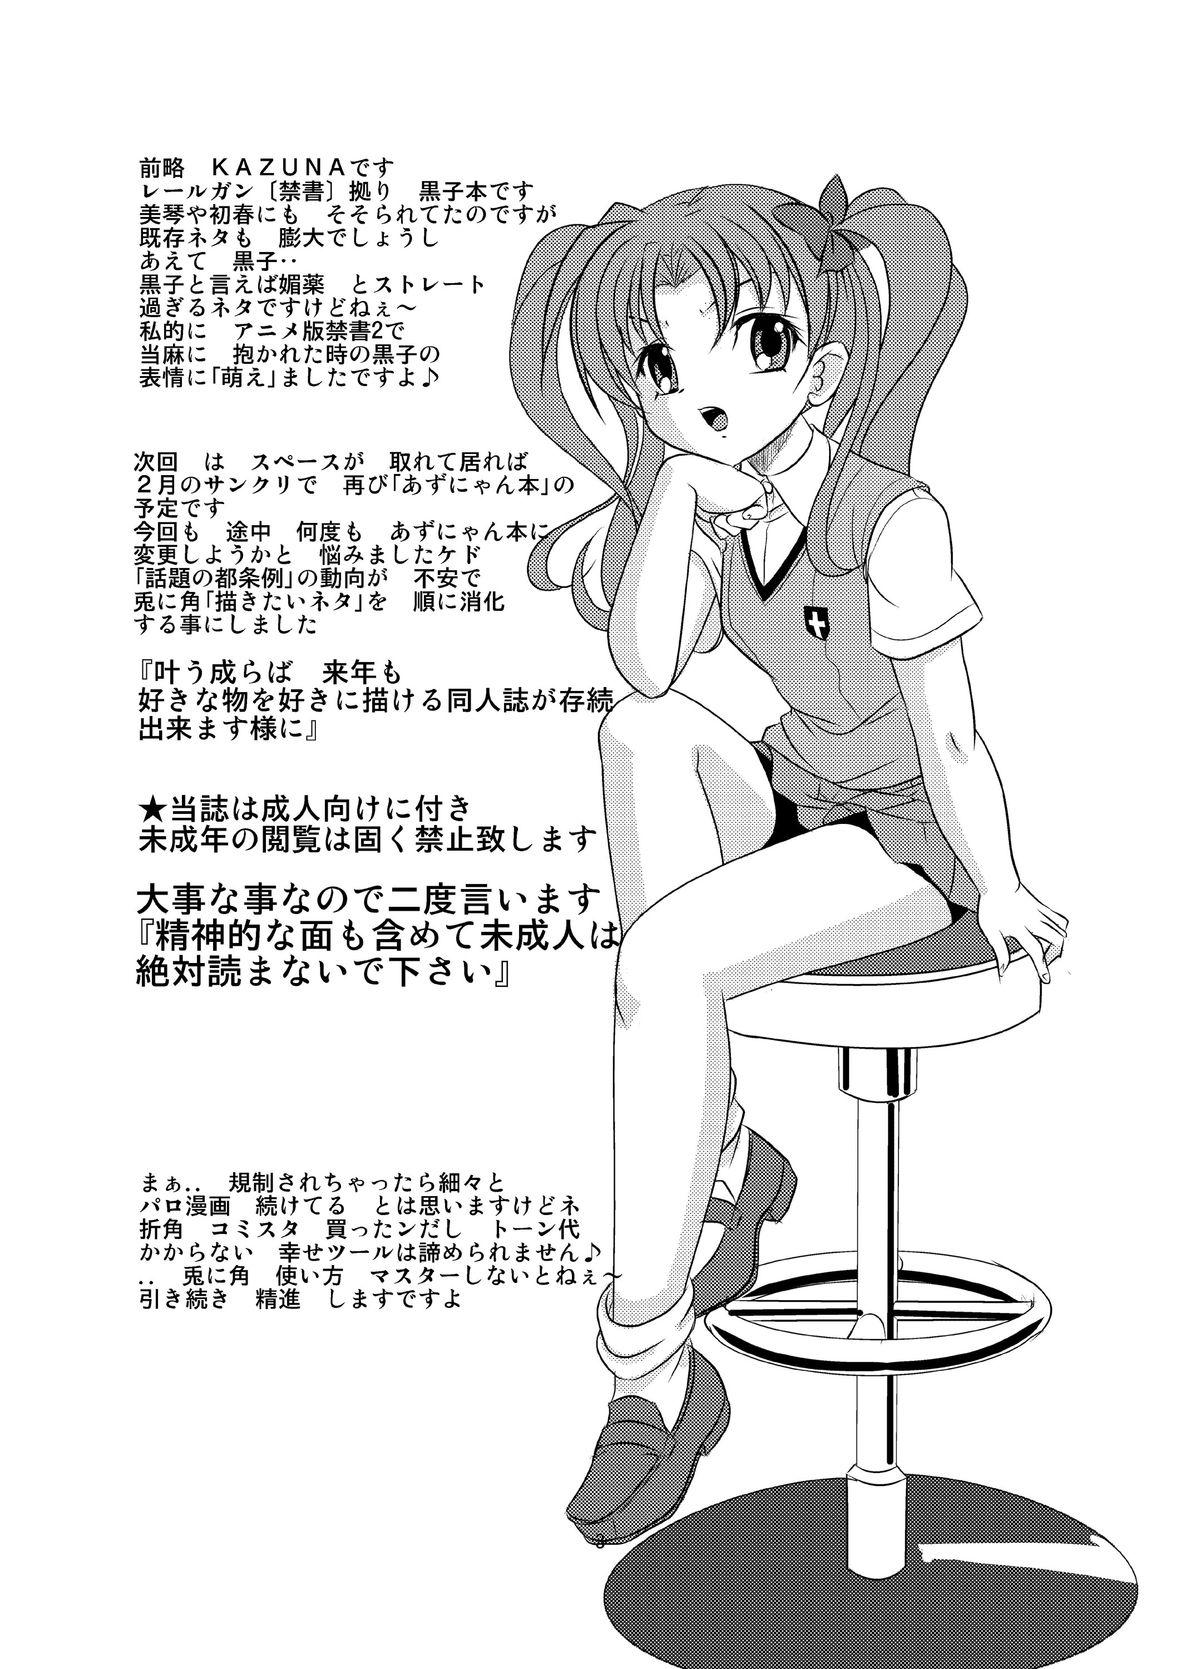 Bunduda Love Poison - Toaru kagaku no railgun Toaru majutsu no index Gaygroup - Page 2